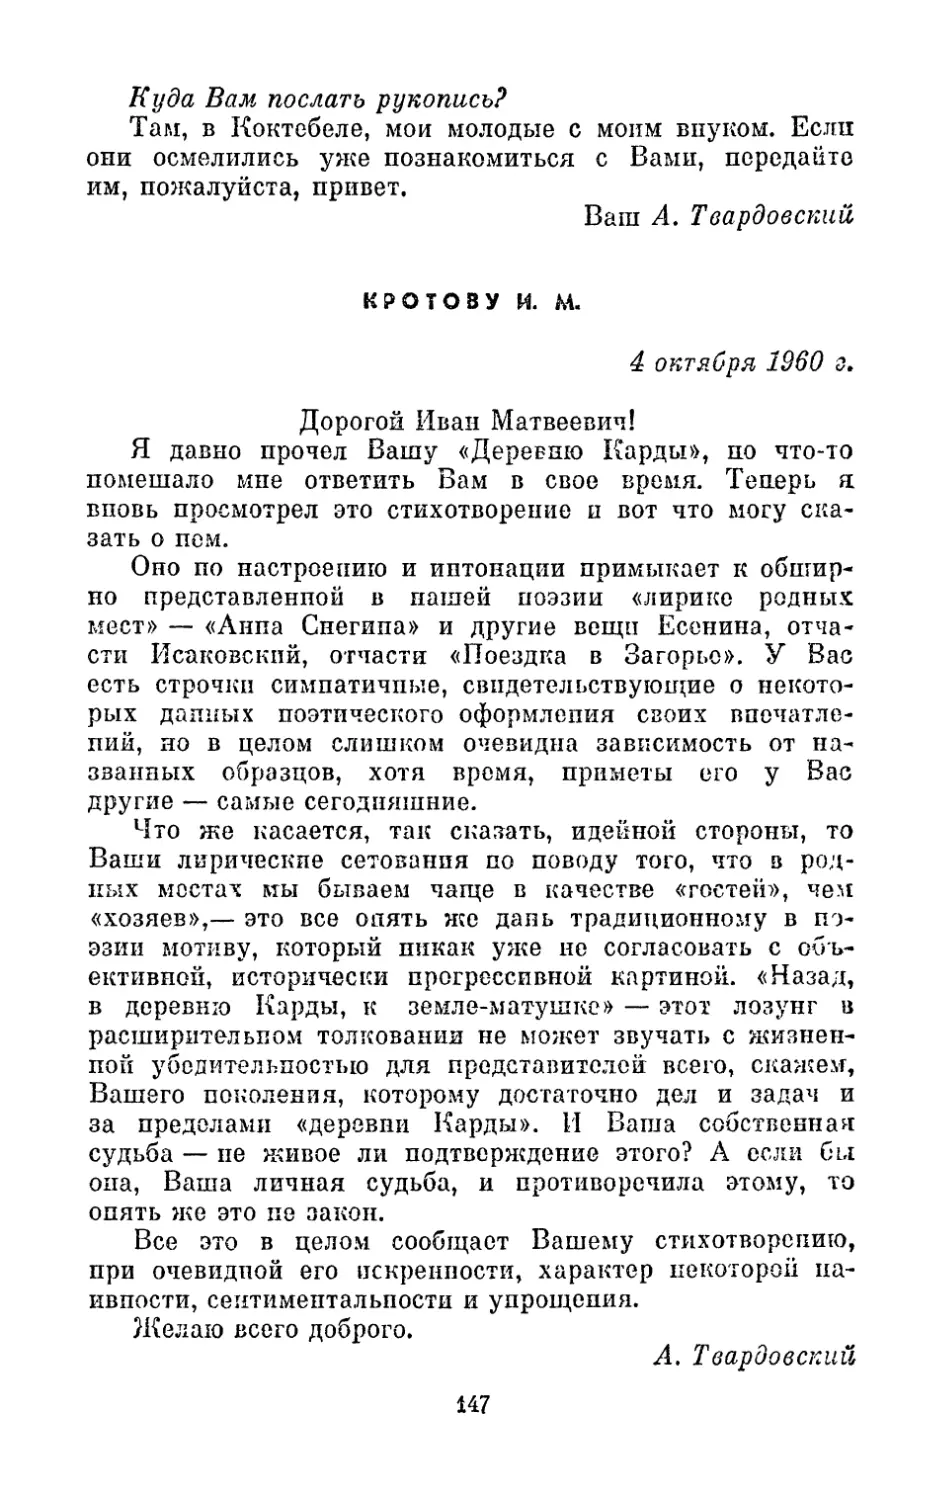 Кротову И. М., 4 октября 1960 г.